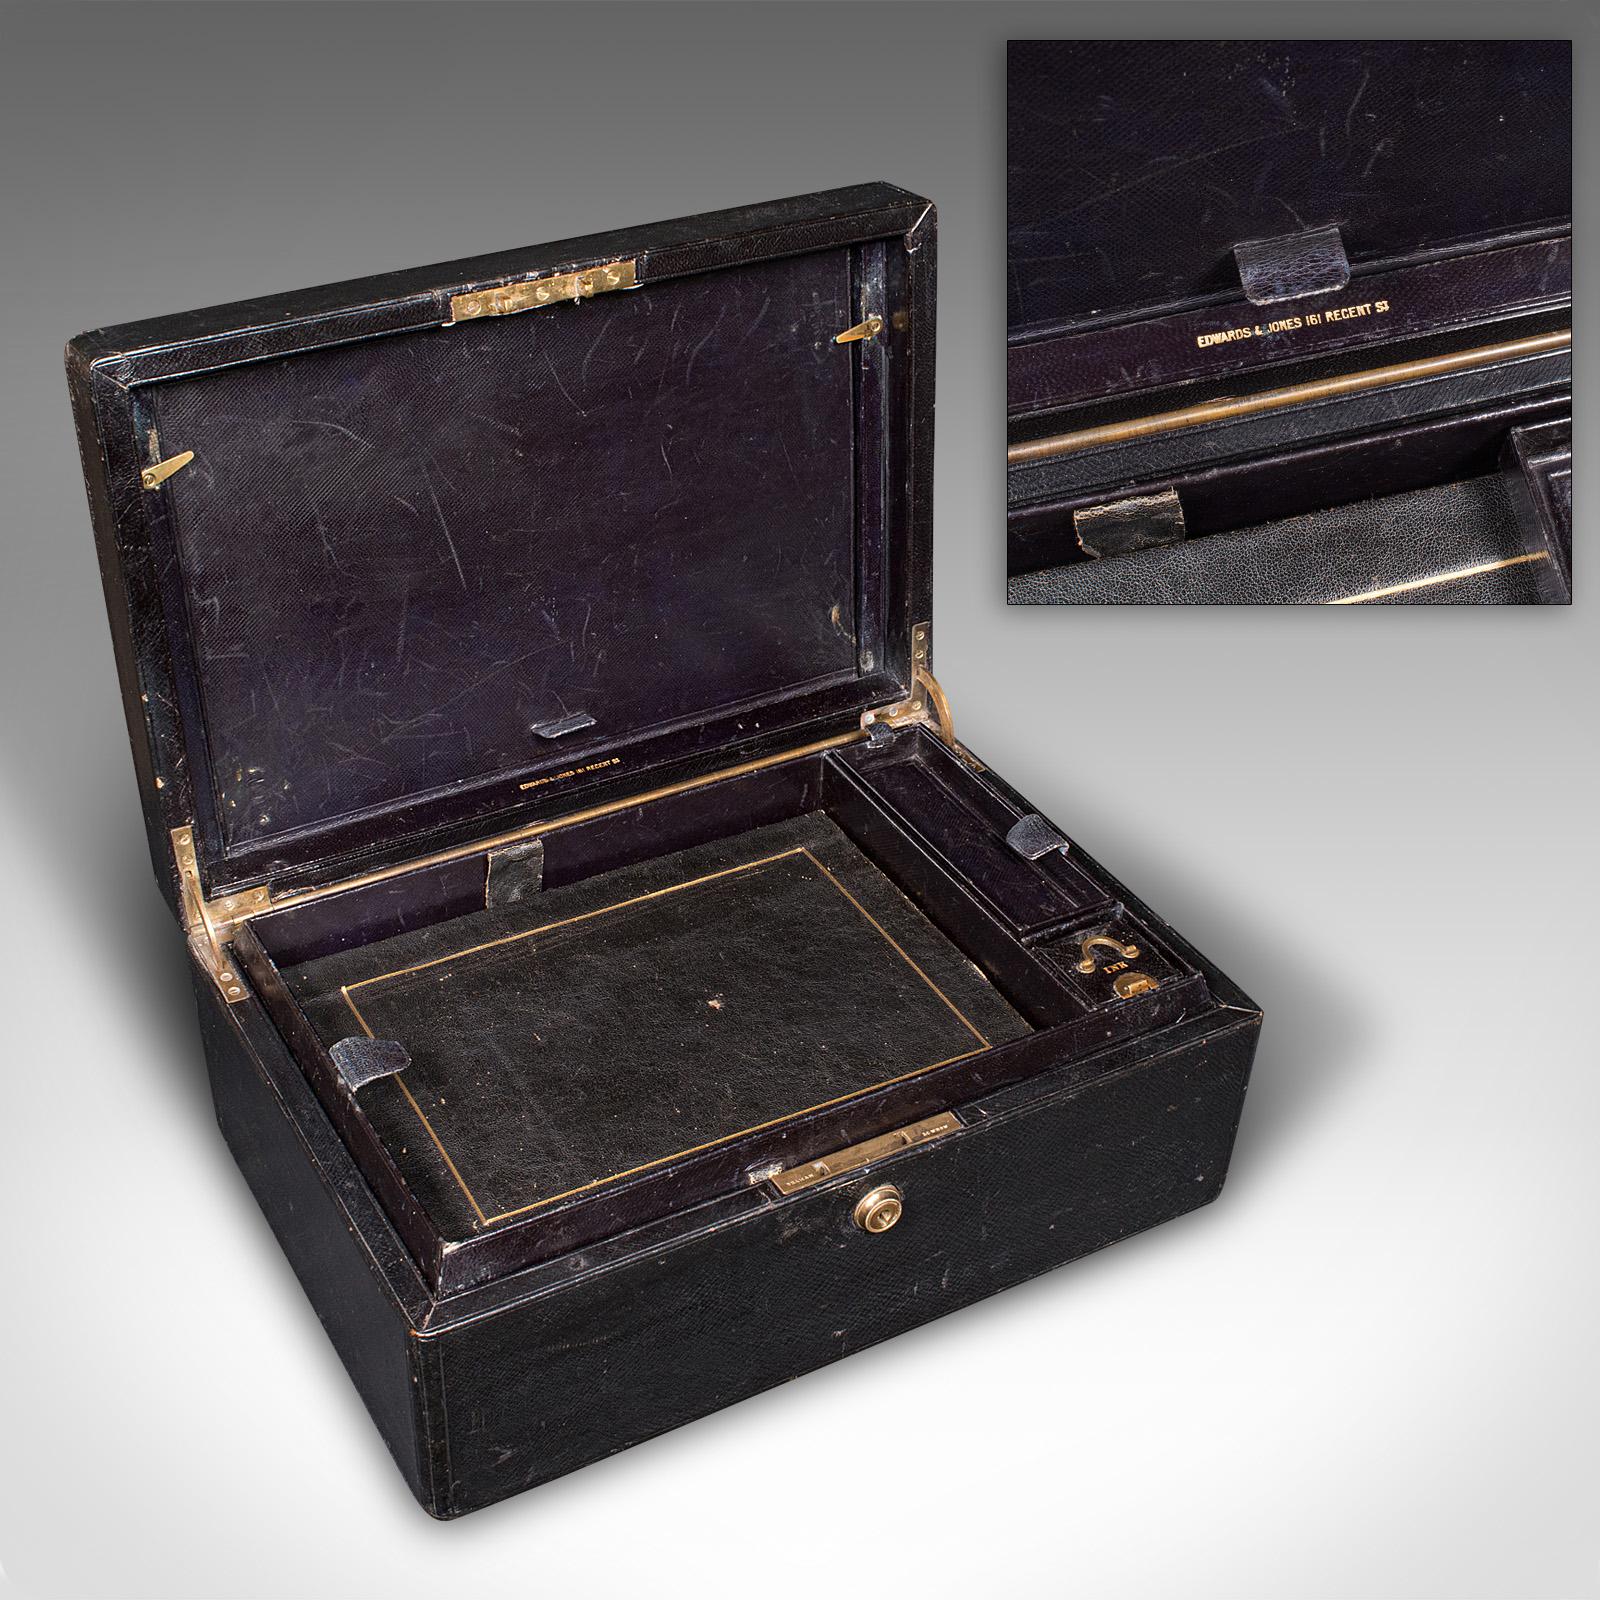 Dies ist eine antike Korrespondenzbox. Eine englische, ledergebundene Schreibmappe aus der spätviktorianischen Zeit, um 1890.

Ausgestattet mit einer Reihe von Merkmalen und einem ansprechenden dunklen Finish
Zeigt eine wünschenswerte gealterte